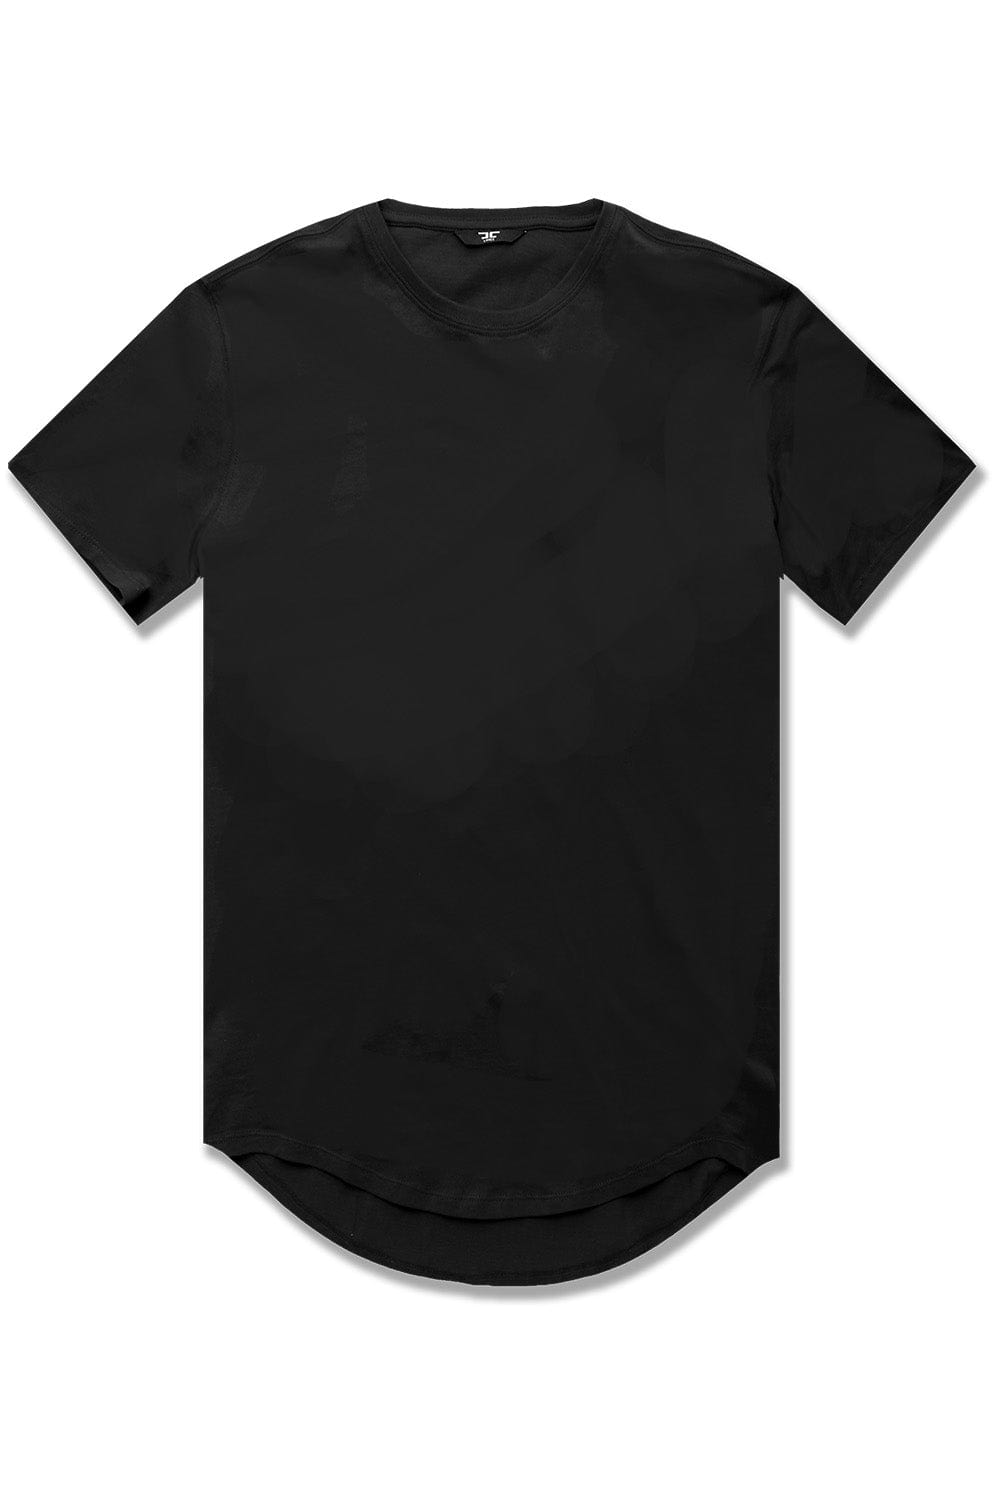 JC Big Men Big Men's Scallop T-Shirt Black / 4XL